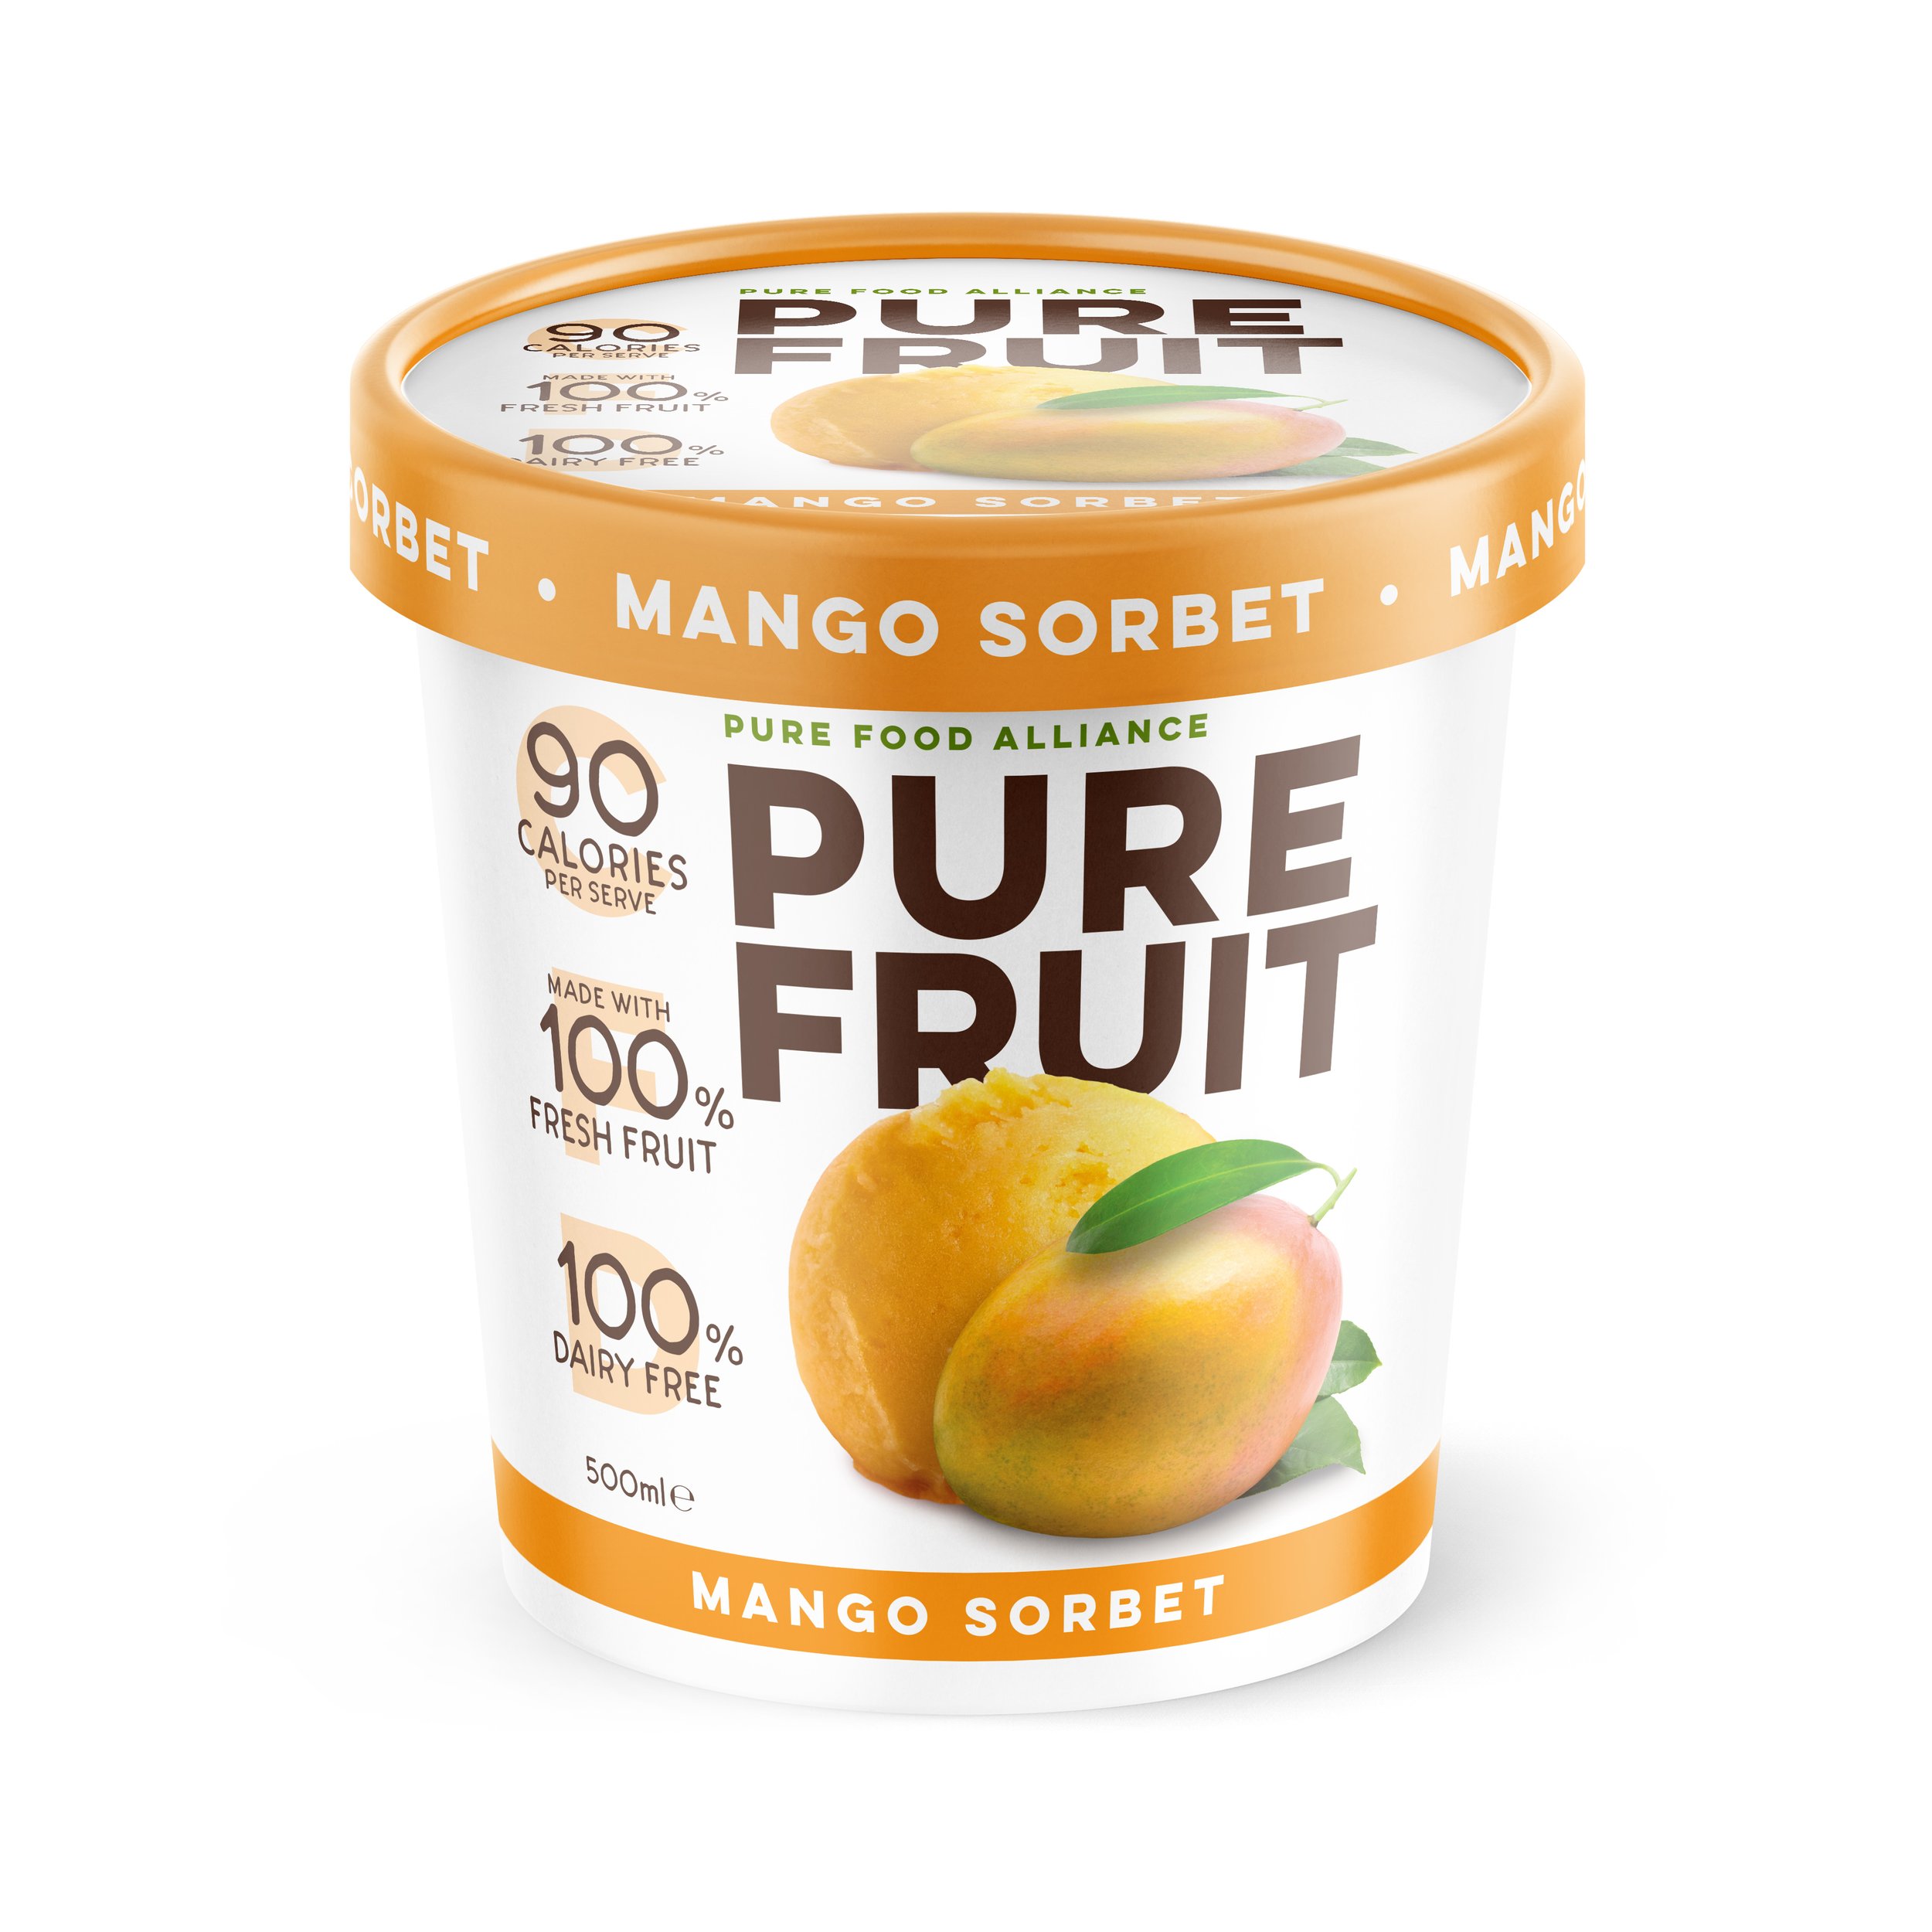 RENDER 3D Mango Sorbet.jpg